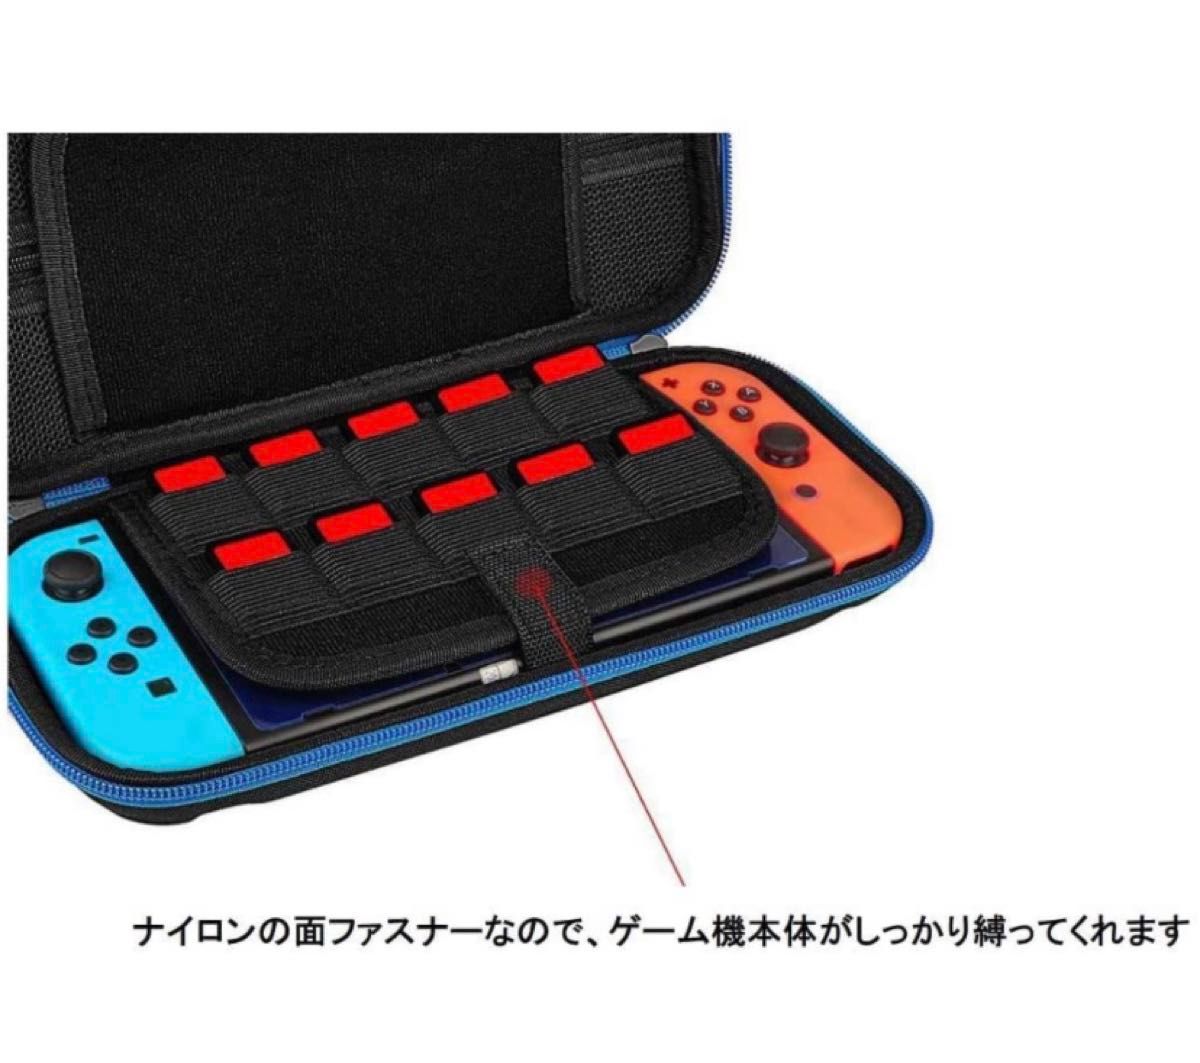 Switchケース NintendoSwitch収納バッグ収納ケース スイッチ収納バッグ ニンテンドー スイッチケースバッグ 